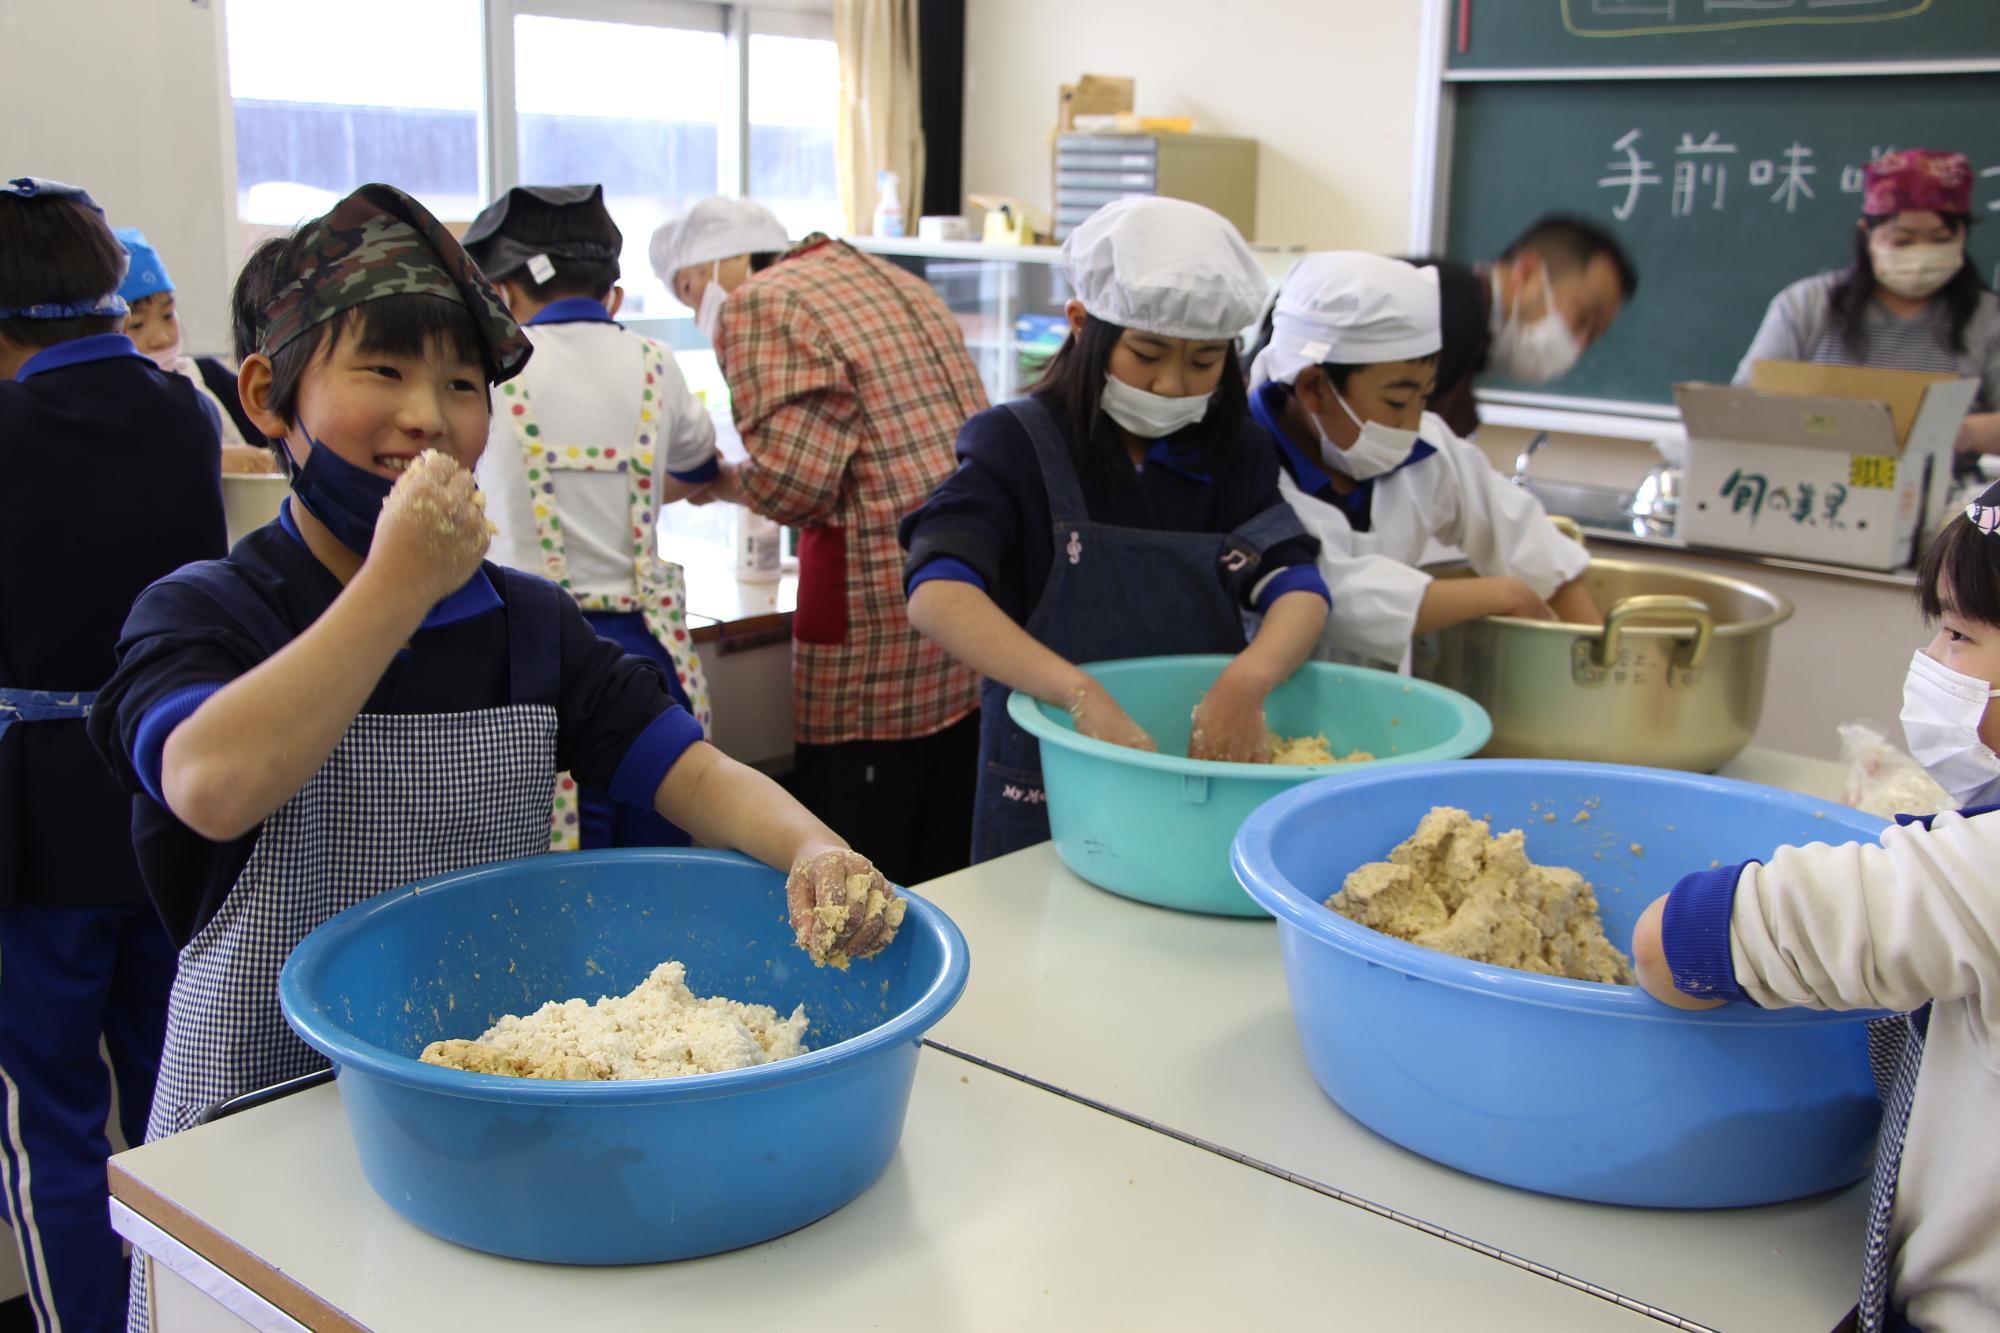 神野小学校の調理室で大豆をつぶしながらみその仕込み作業をする子どもとつぶした大豆の味見をする子どもの写真